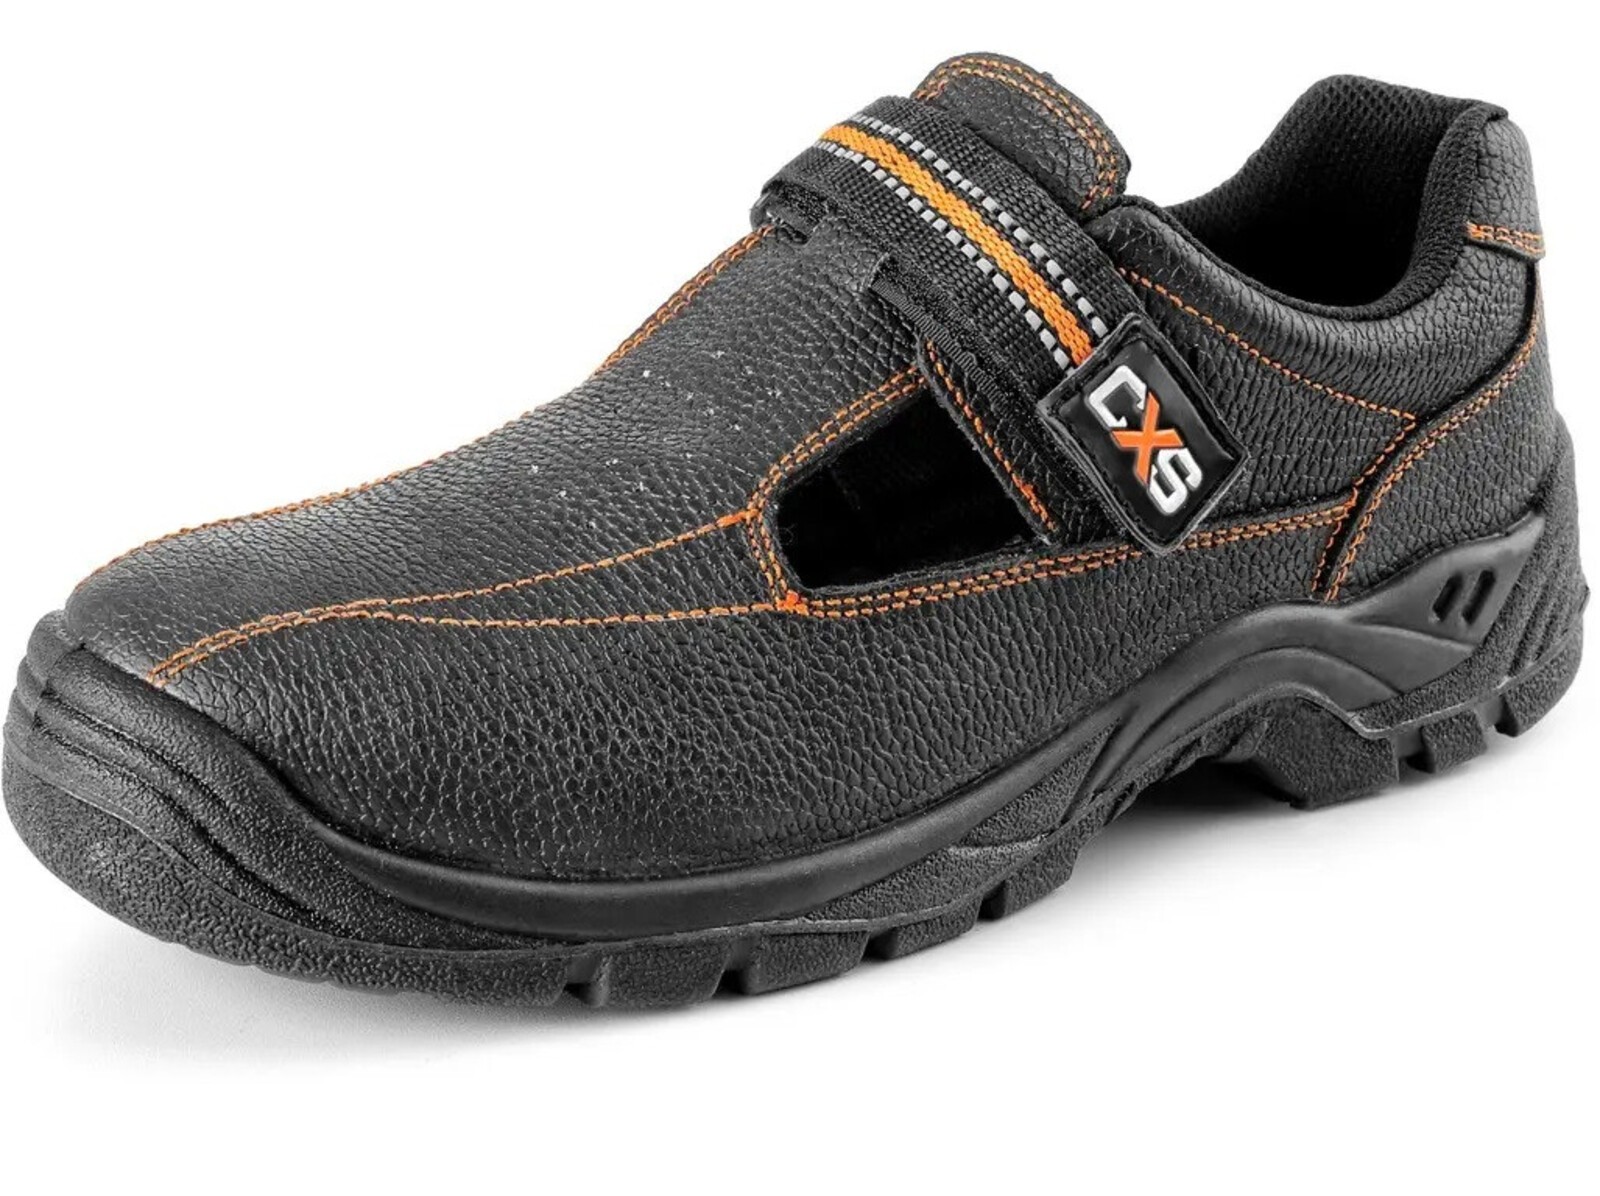 Bezpečnostné sandále CXS Stone Nefrit S1 SRC - veľkosť: 40, farba: čierna/oranžová